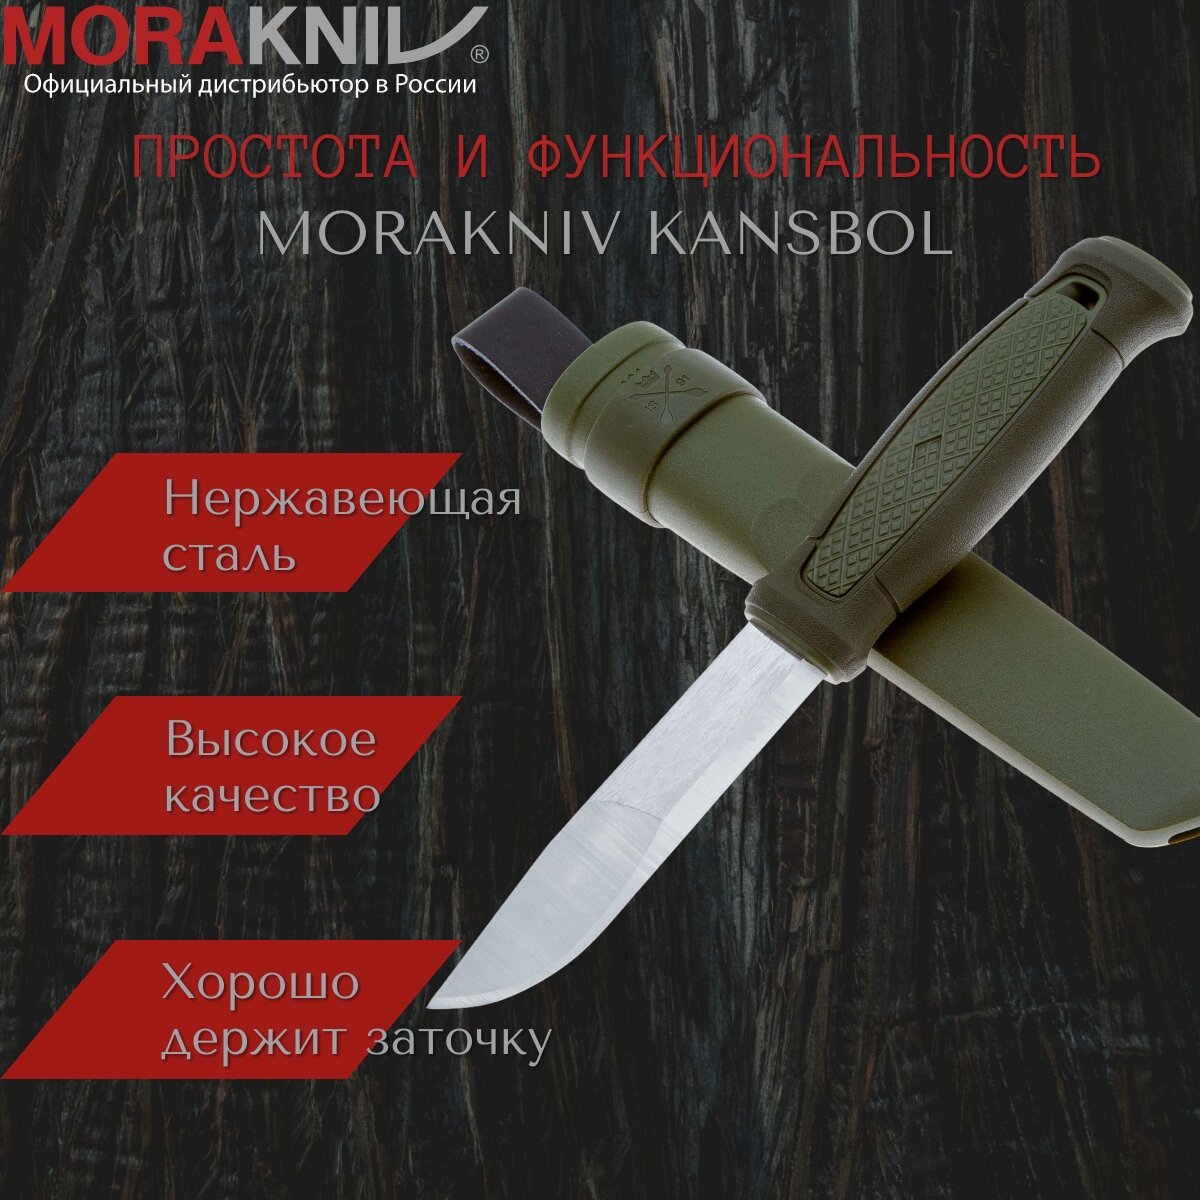 Нож фиксированный с ножнами туристический тактический для выживания рыбалки и охоты Morakniv Kansbol, нержавеющая сталь, 12634